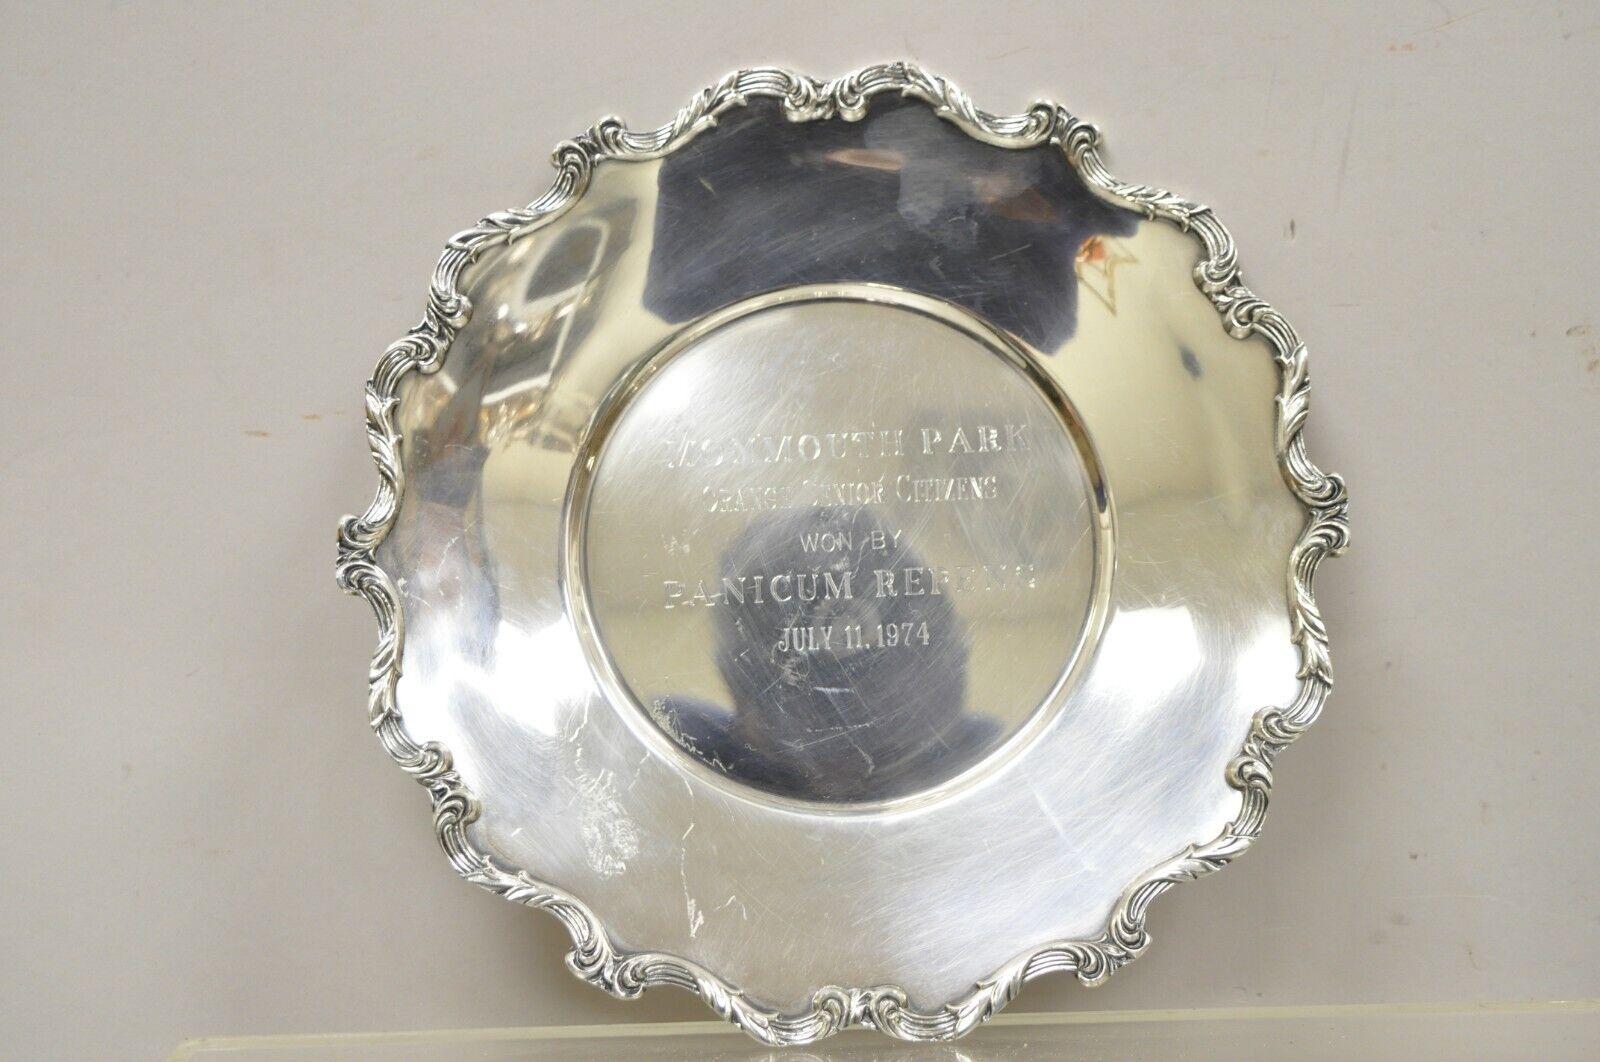 Plaques de prix vintage Wallace 1125 Monmouth Park en argent plaqué. L'objet présente des bords festonnés et un poinçon d'origine.
Sur la plaque 1, on peut lire : 